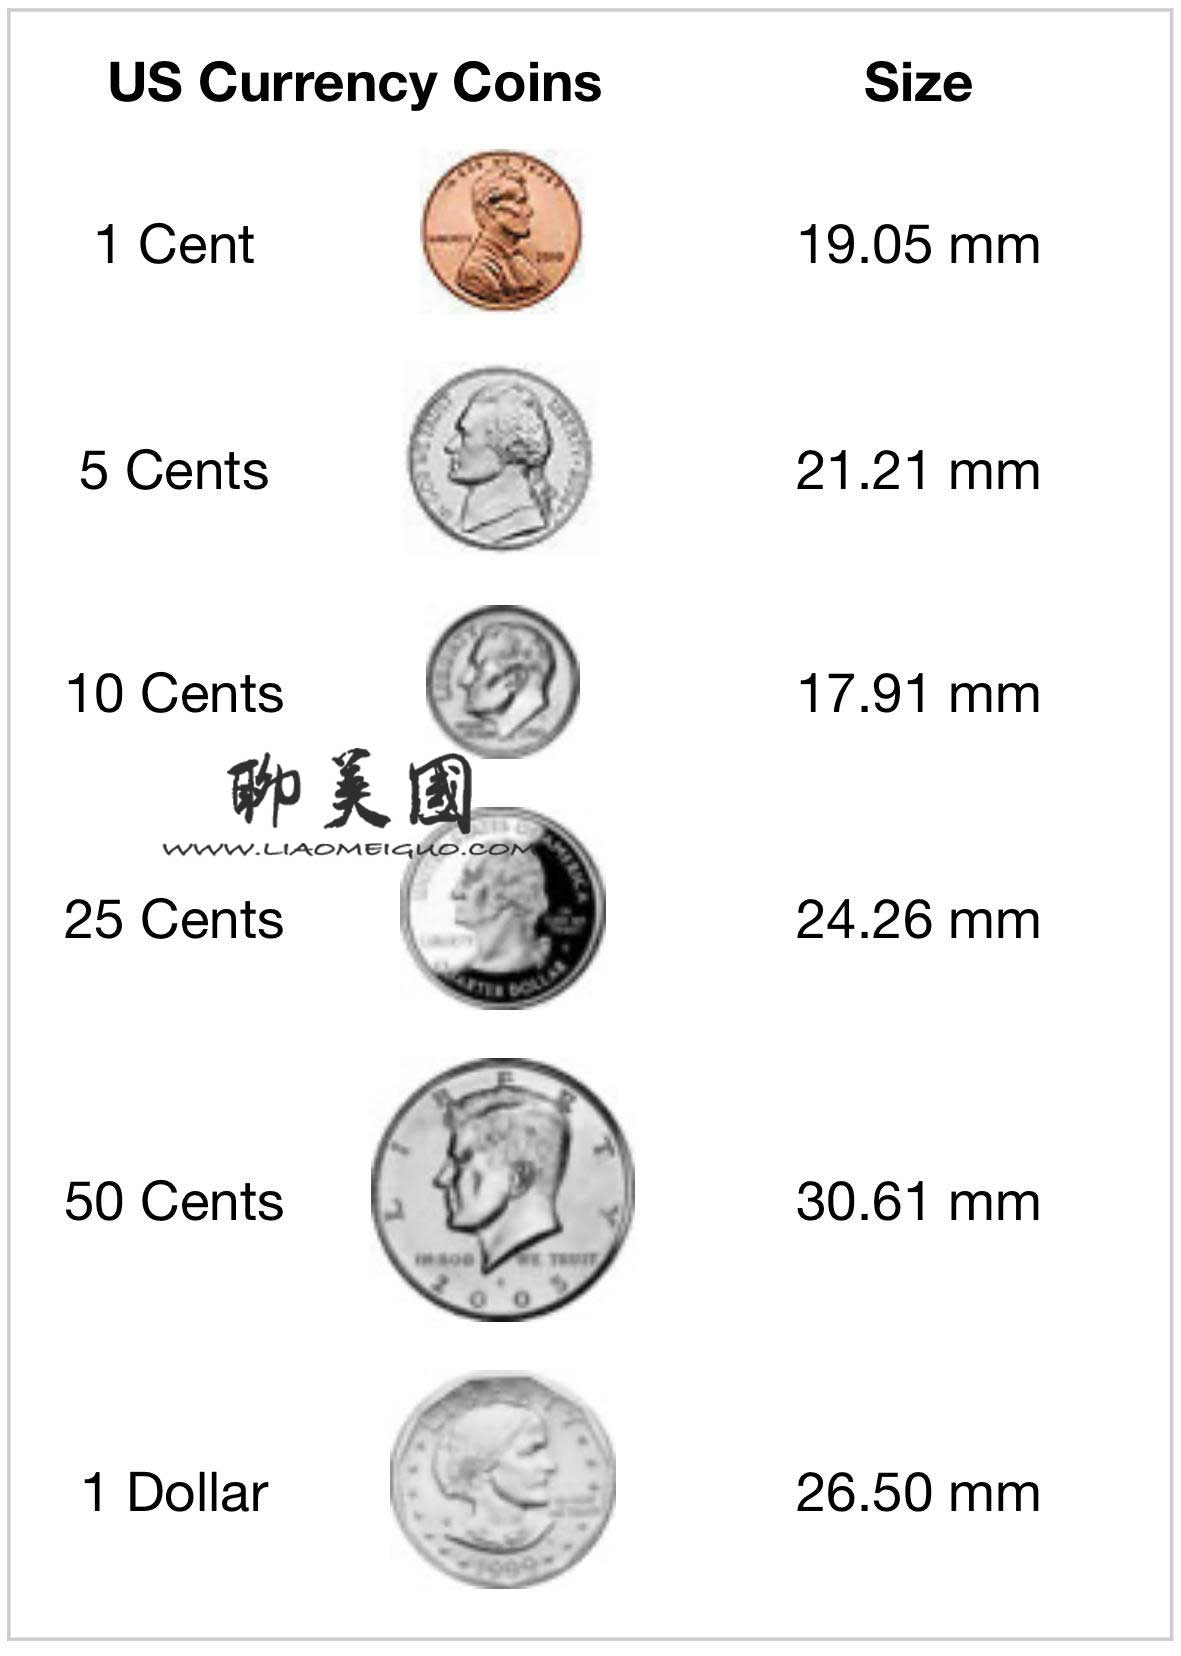 牡丹一元硬币收藏价格趋势分析